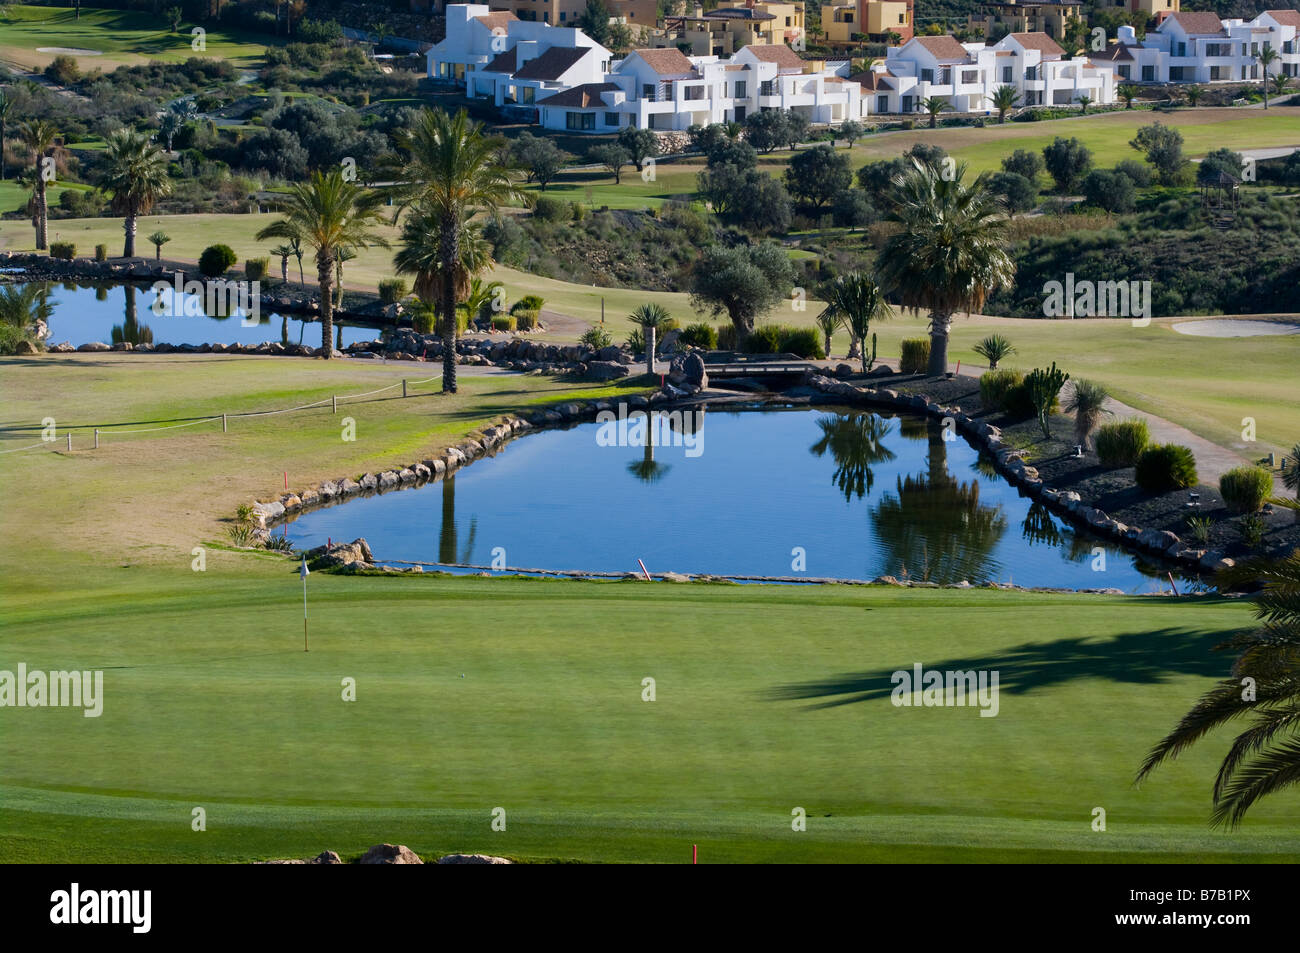 La Valle Del Este Golf Vera Almeria Spagna spagnolo Golf Resorts Corsi Foto Stock